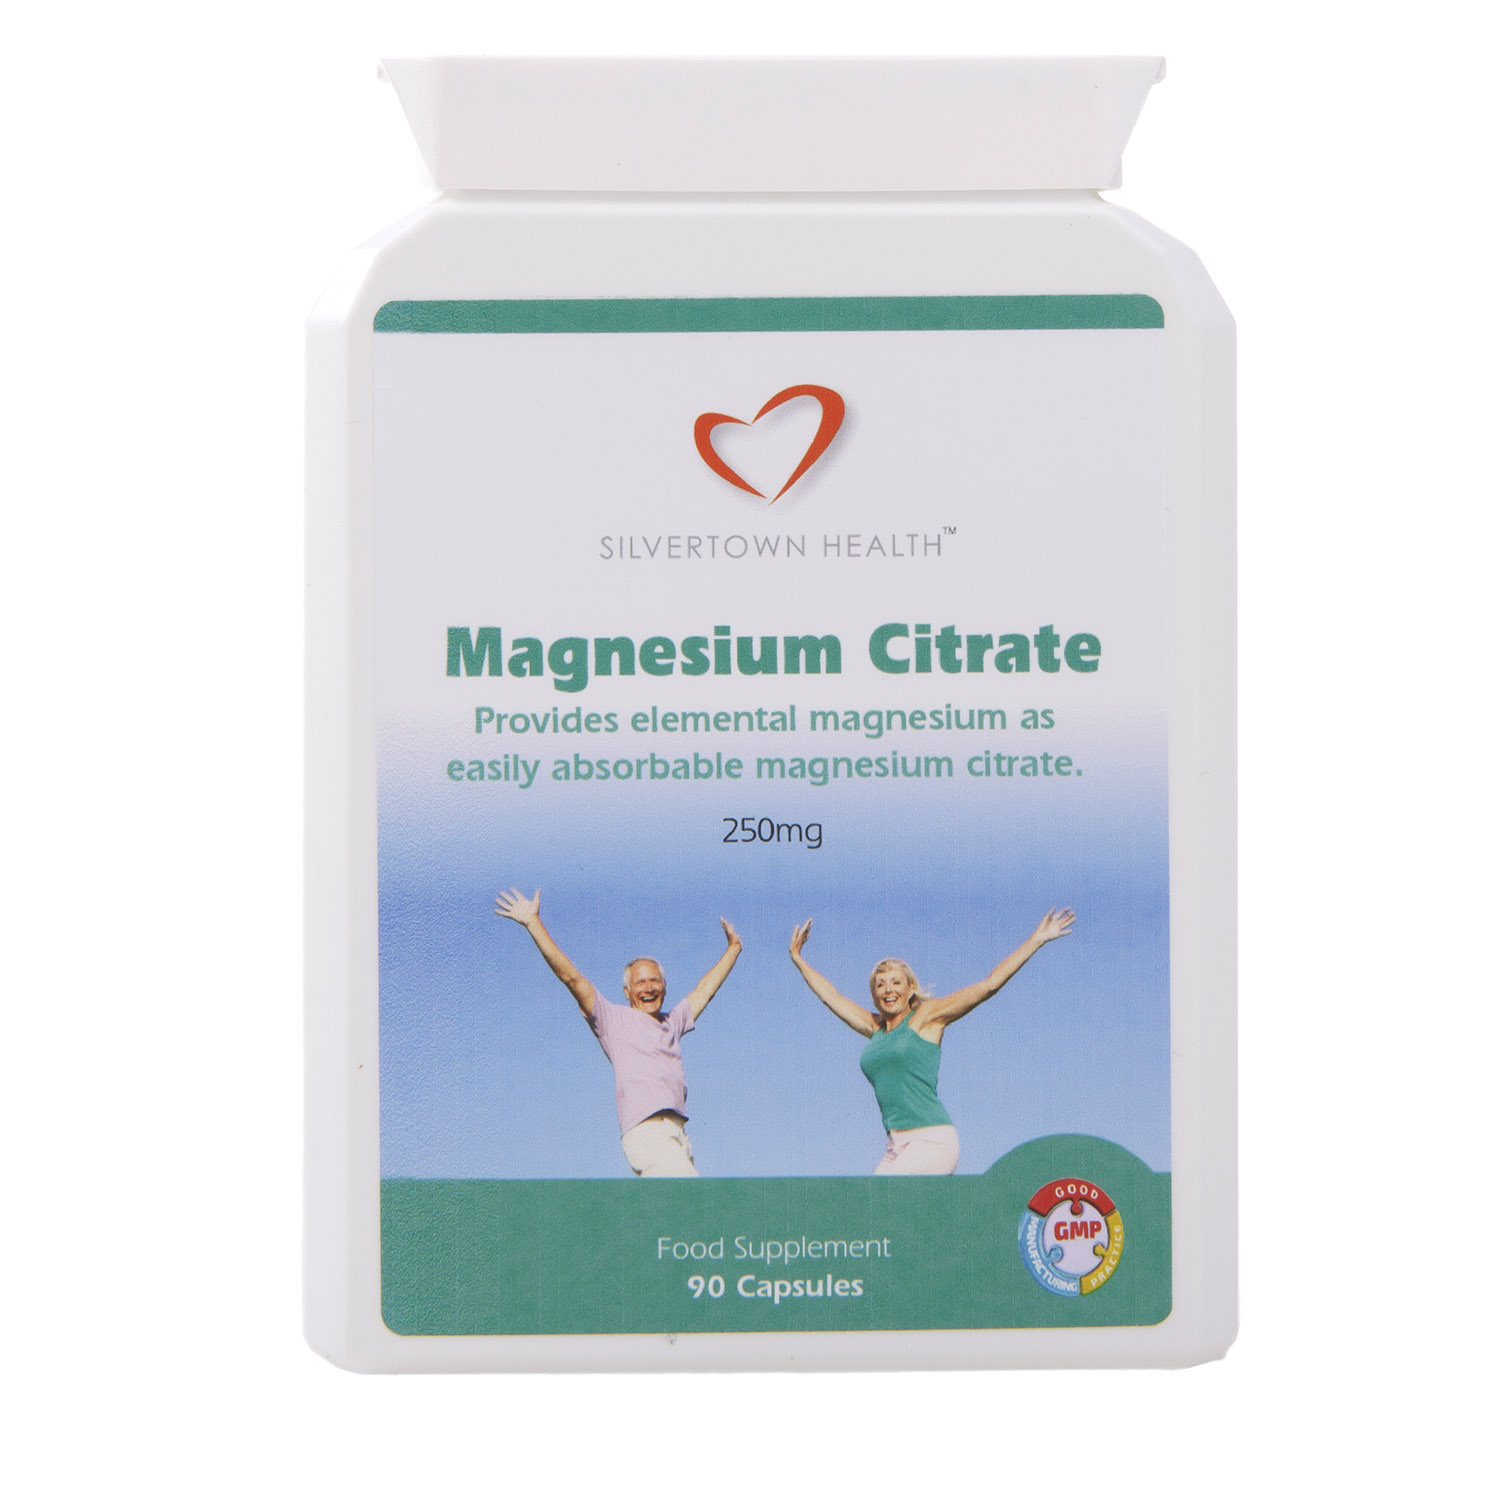 Magnesium Citrate Capsules - 90 Capsules